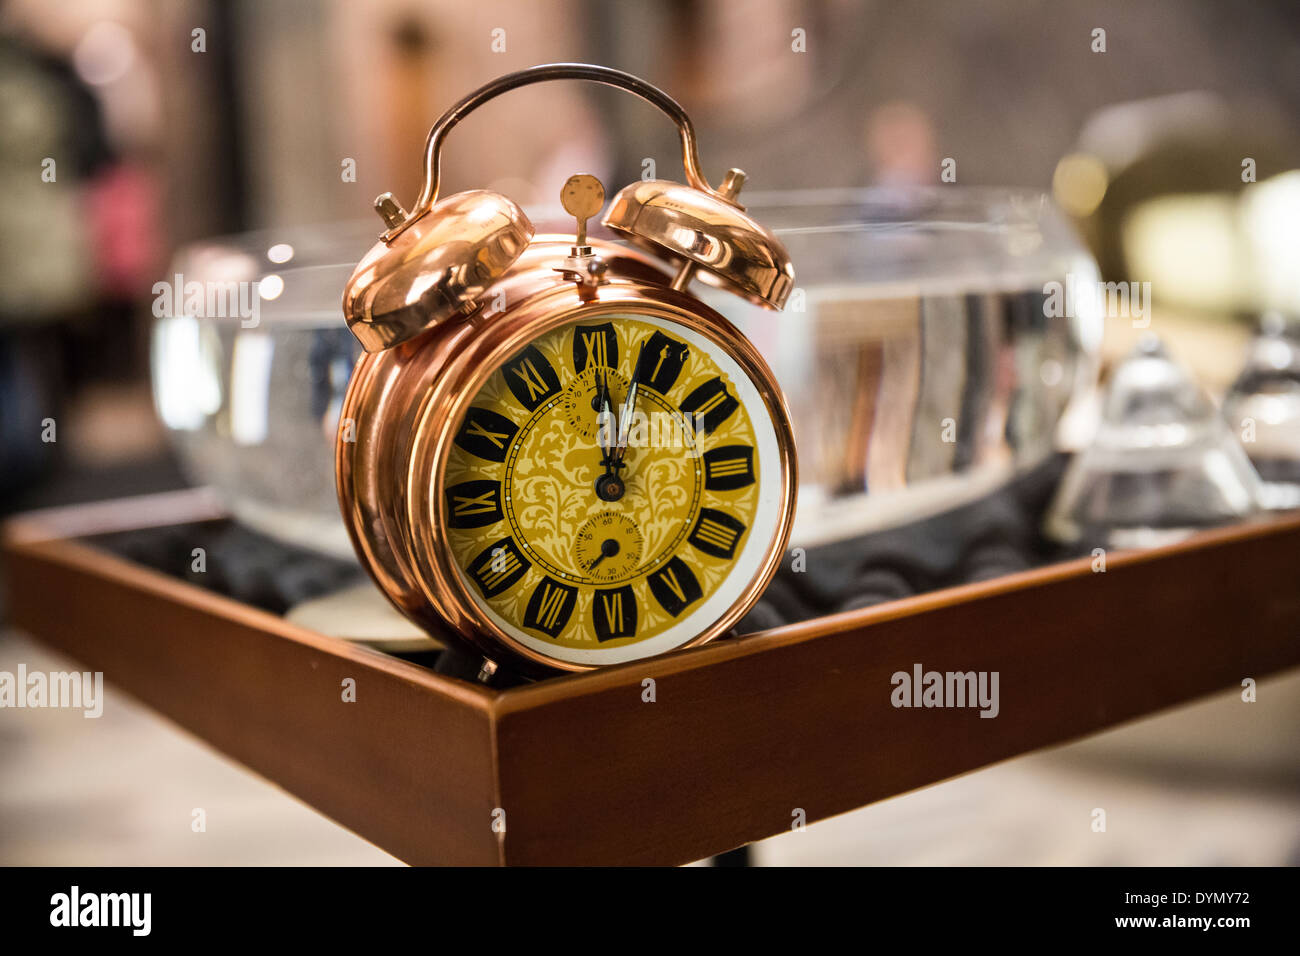 Vintage reloj alarma sobre una tabla. poca profundidad de campo. Foto de stock